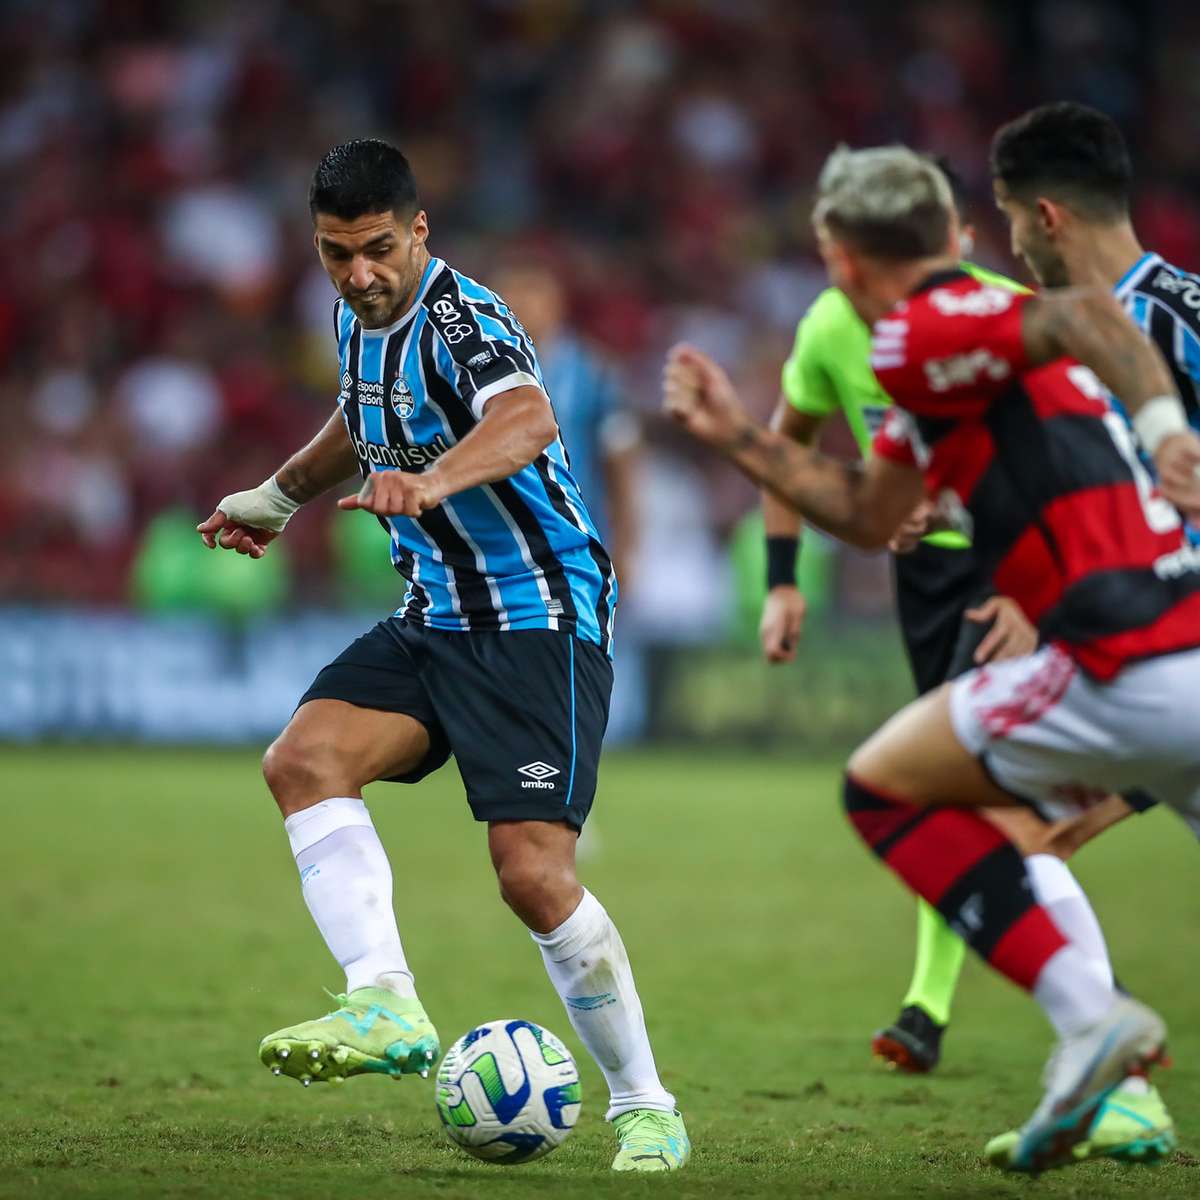 Destaque Grenal do dia: Grêmio joga hoje contra o Flamengo pela